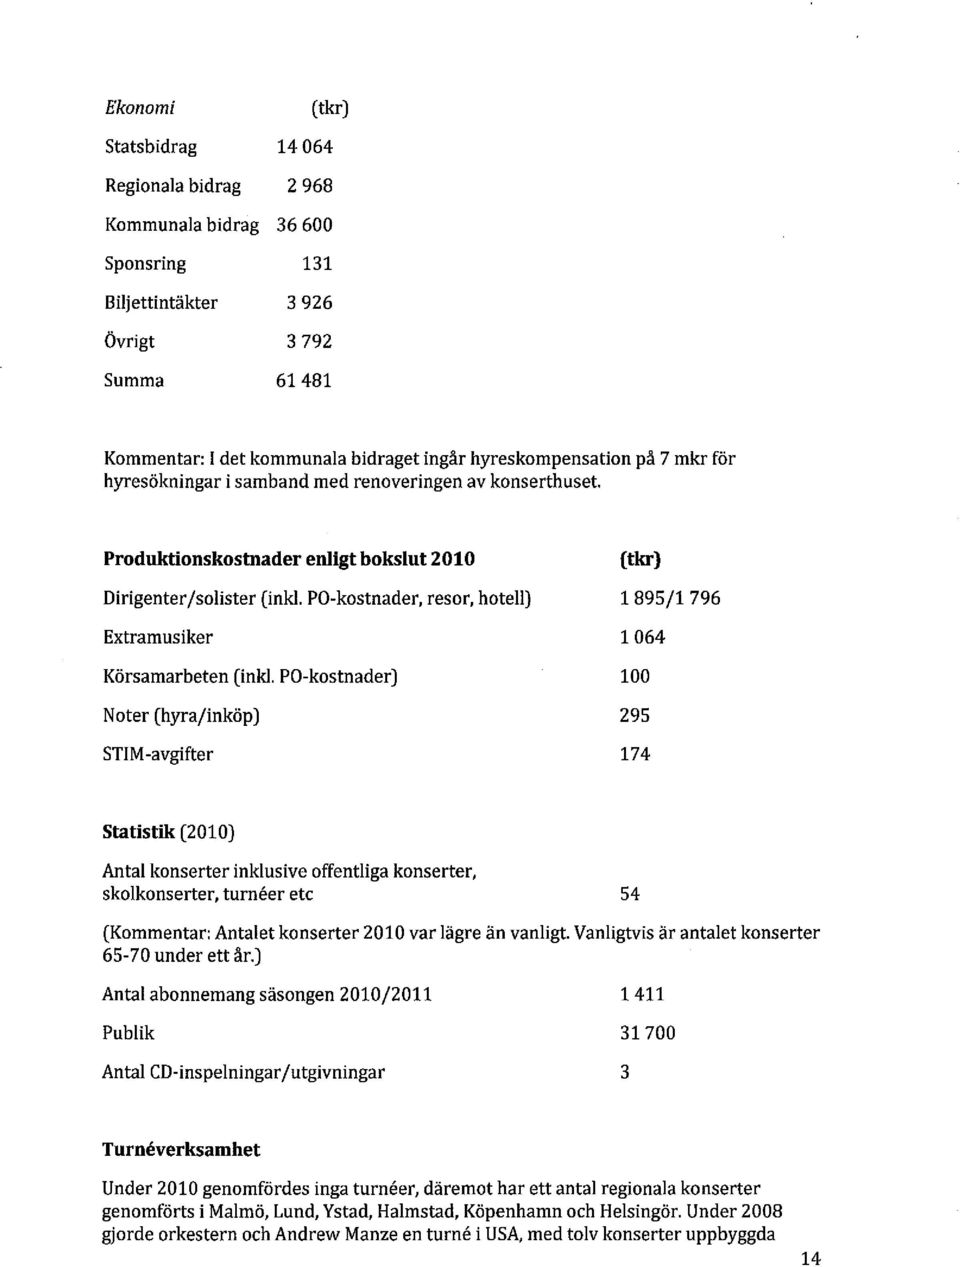 Produktionskostnader enligt bokslut 2010 Dirigenter/solister (inkl PO-kostnader, resor, hotell) Extramusiker Körsamarbeten (lnkl, PO-kostnader) Noter (hyra/inköp) STIM-avgifter (tkr) 1895/1796 1064